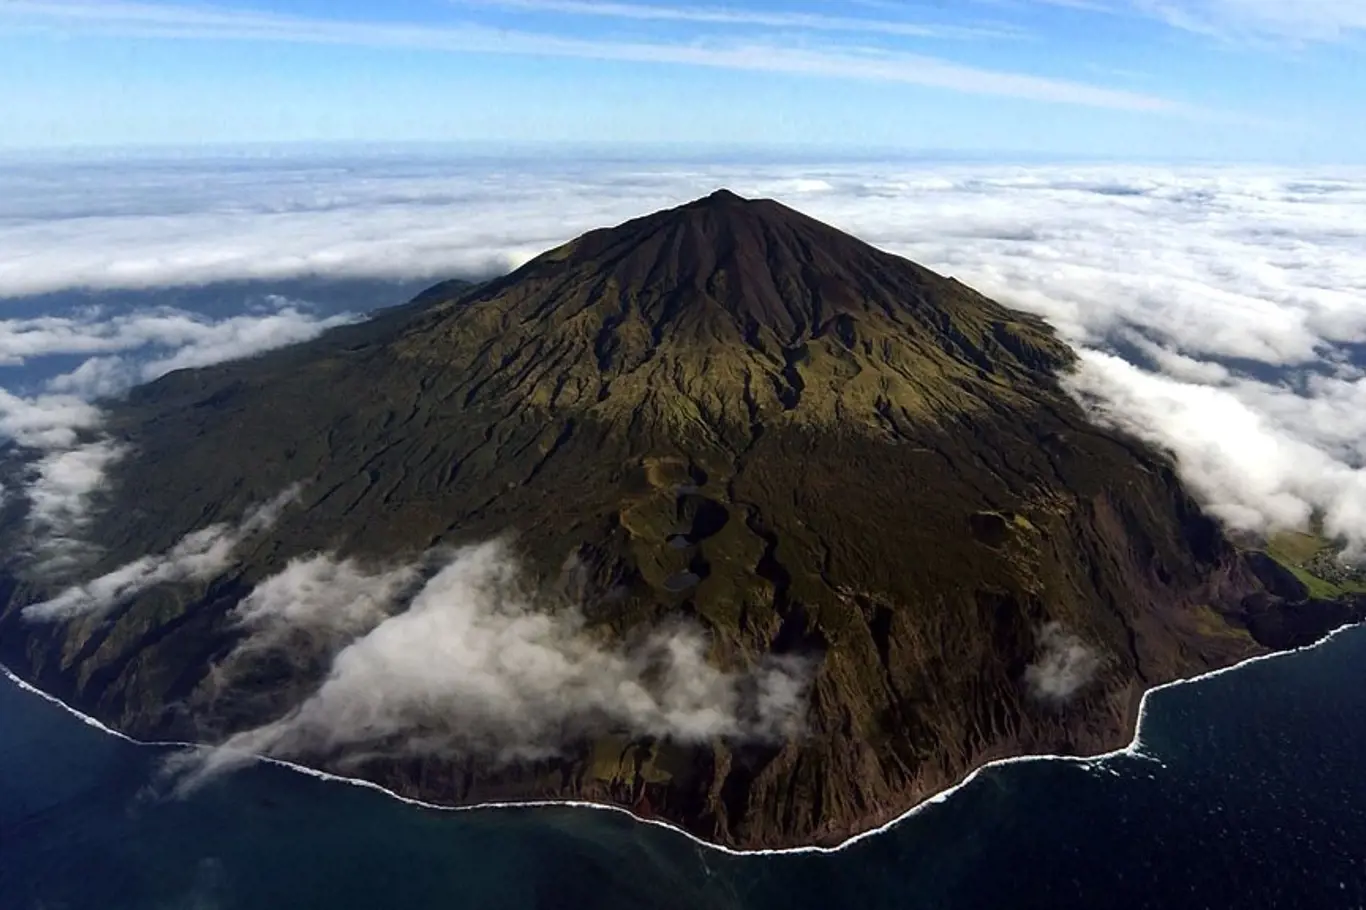 Vláda Tristan da Cunha vyhlásila ve svých vodách mořskou ochrannou zónu o rozloze 687 000 km čtverečních